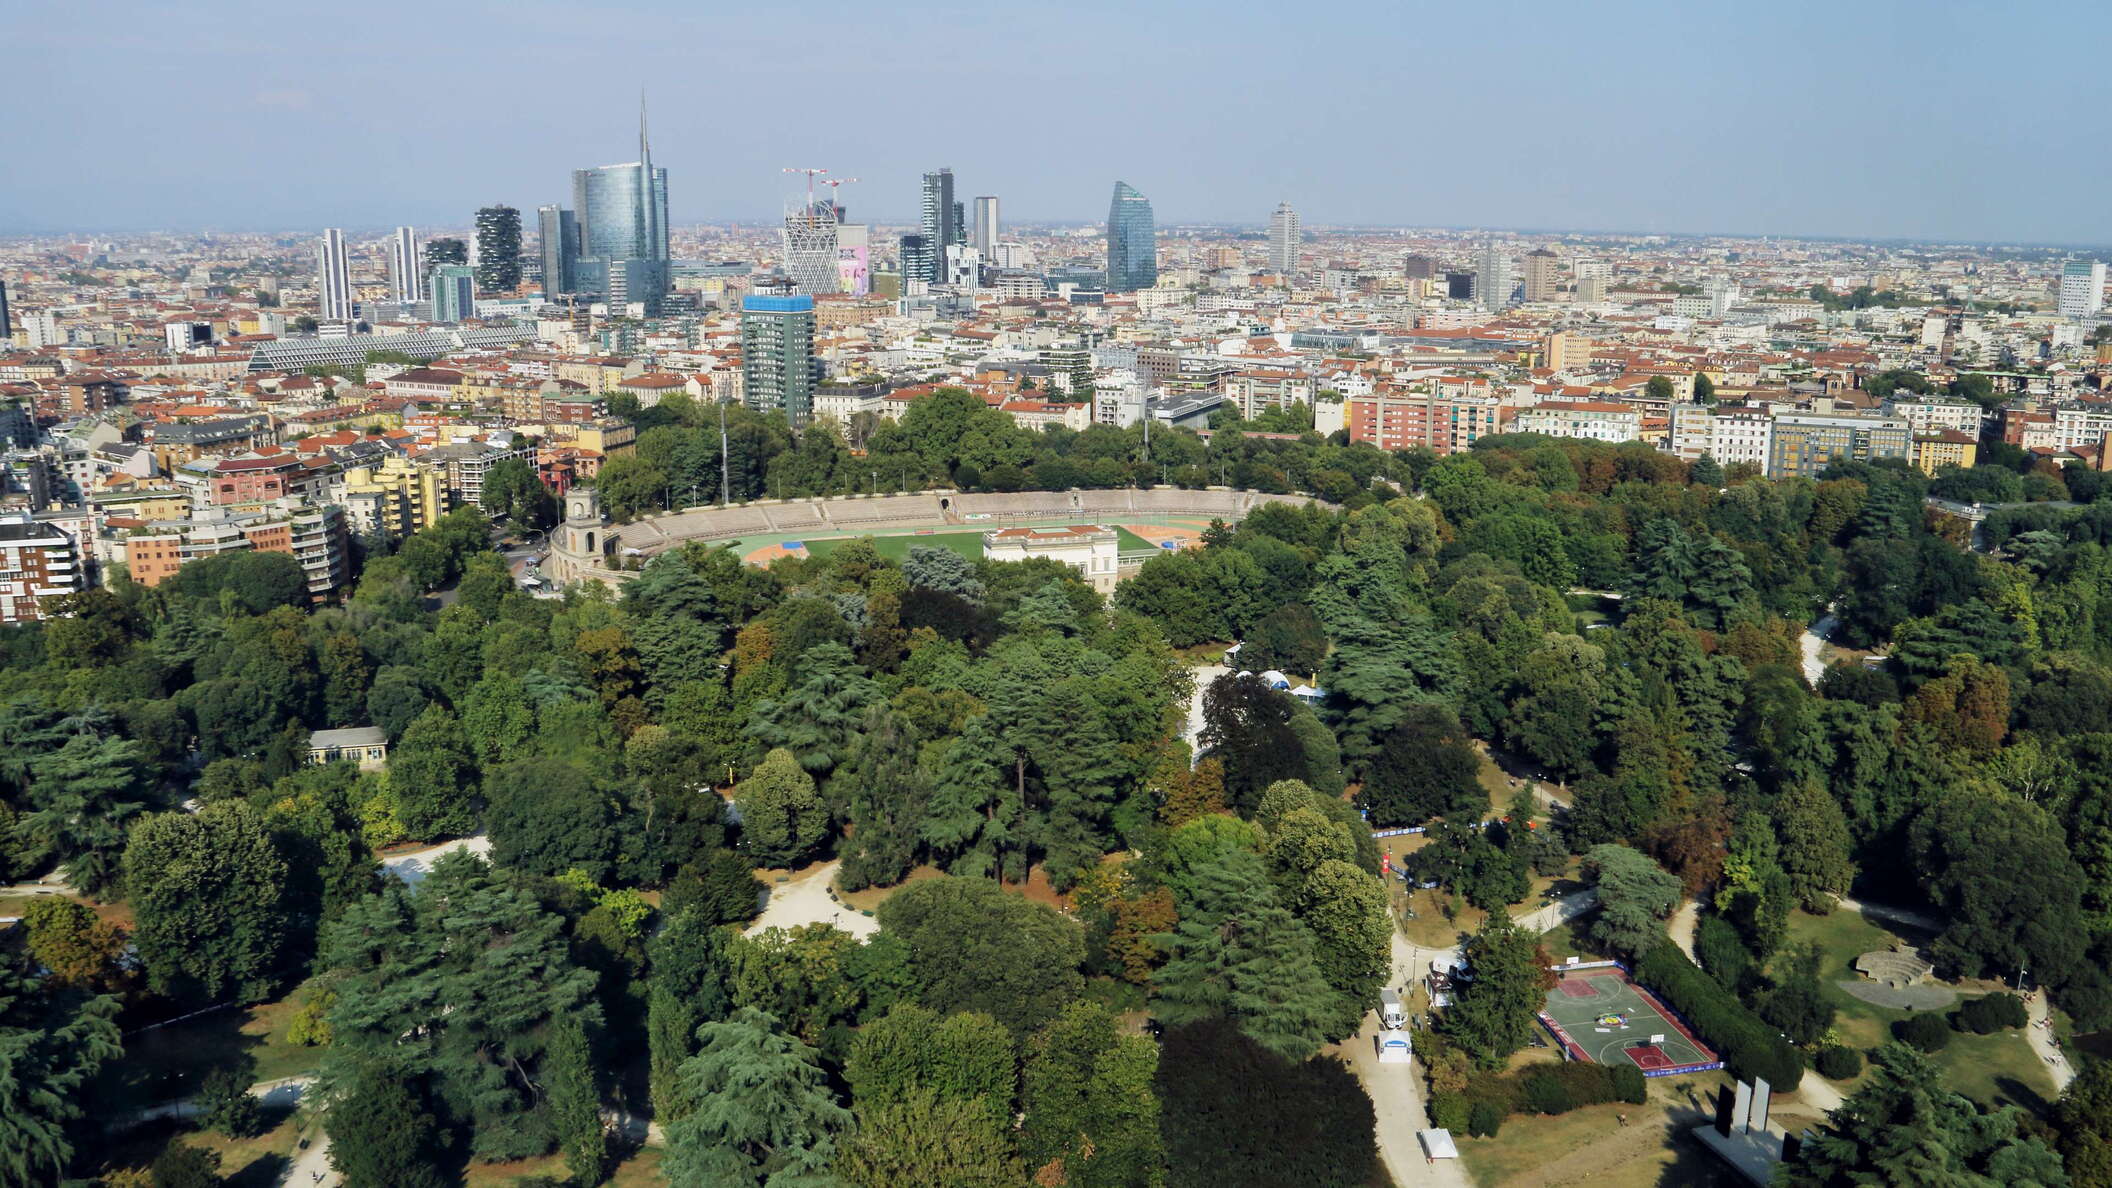 Milano | Parco Sempione and Centro Direzionale